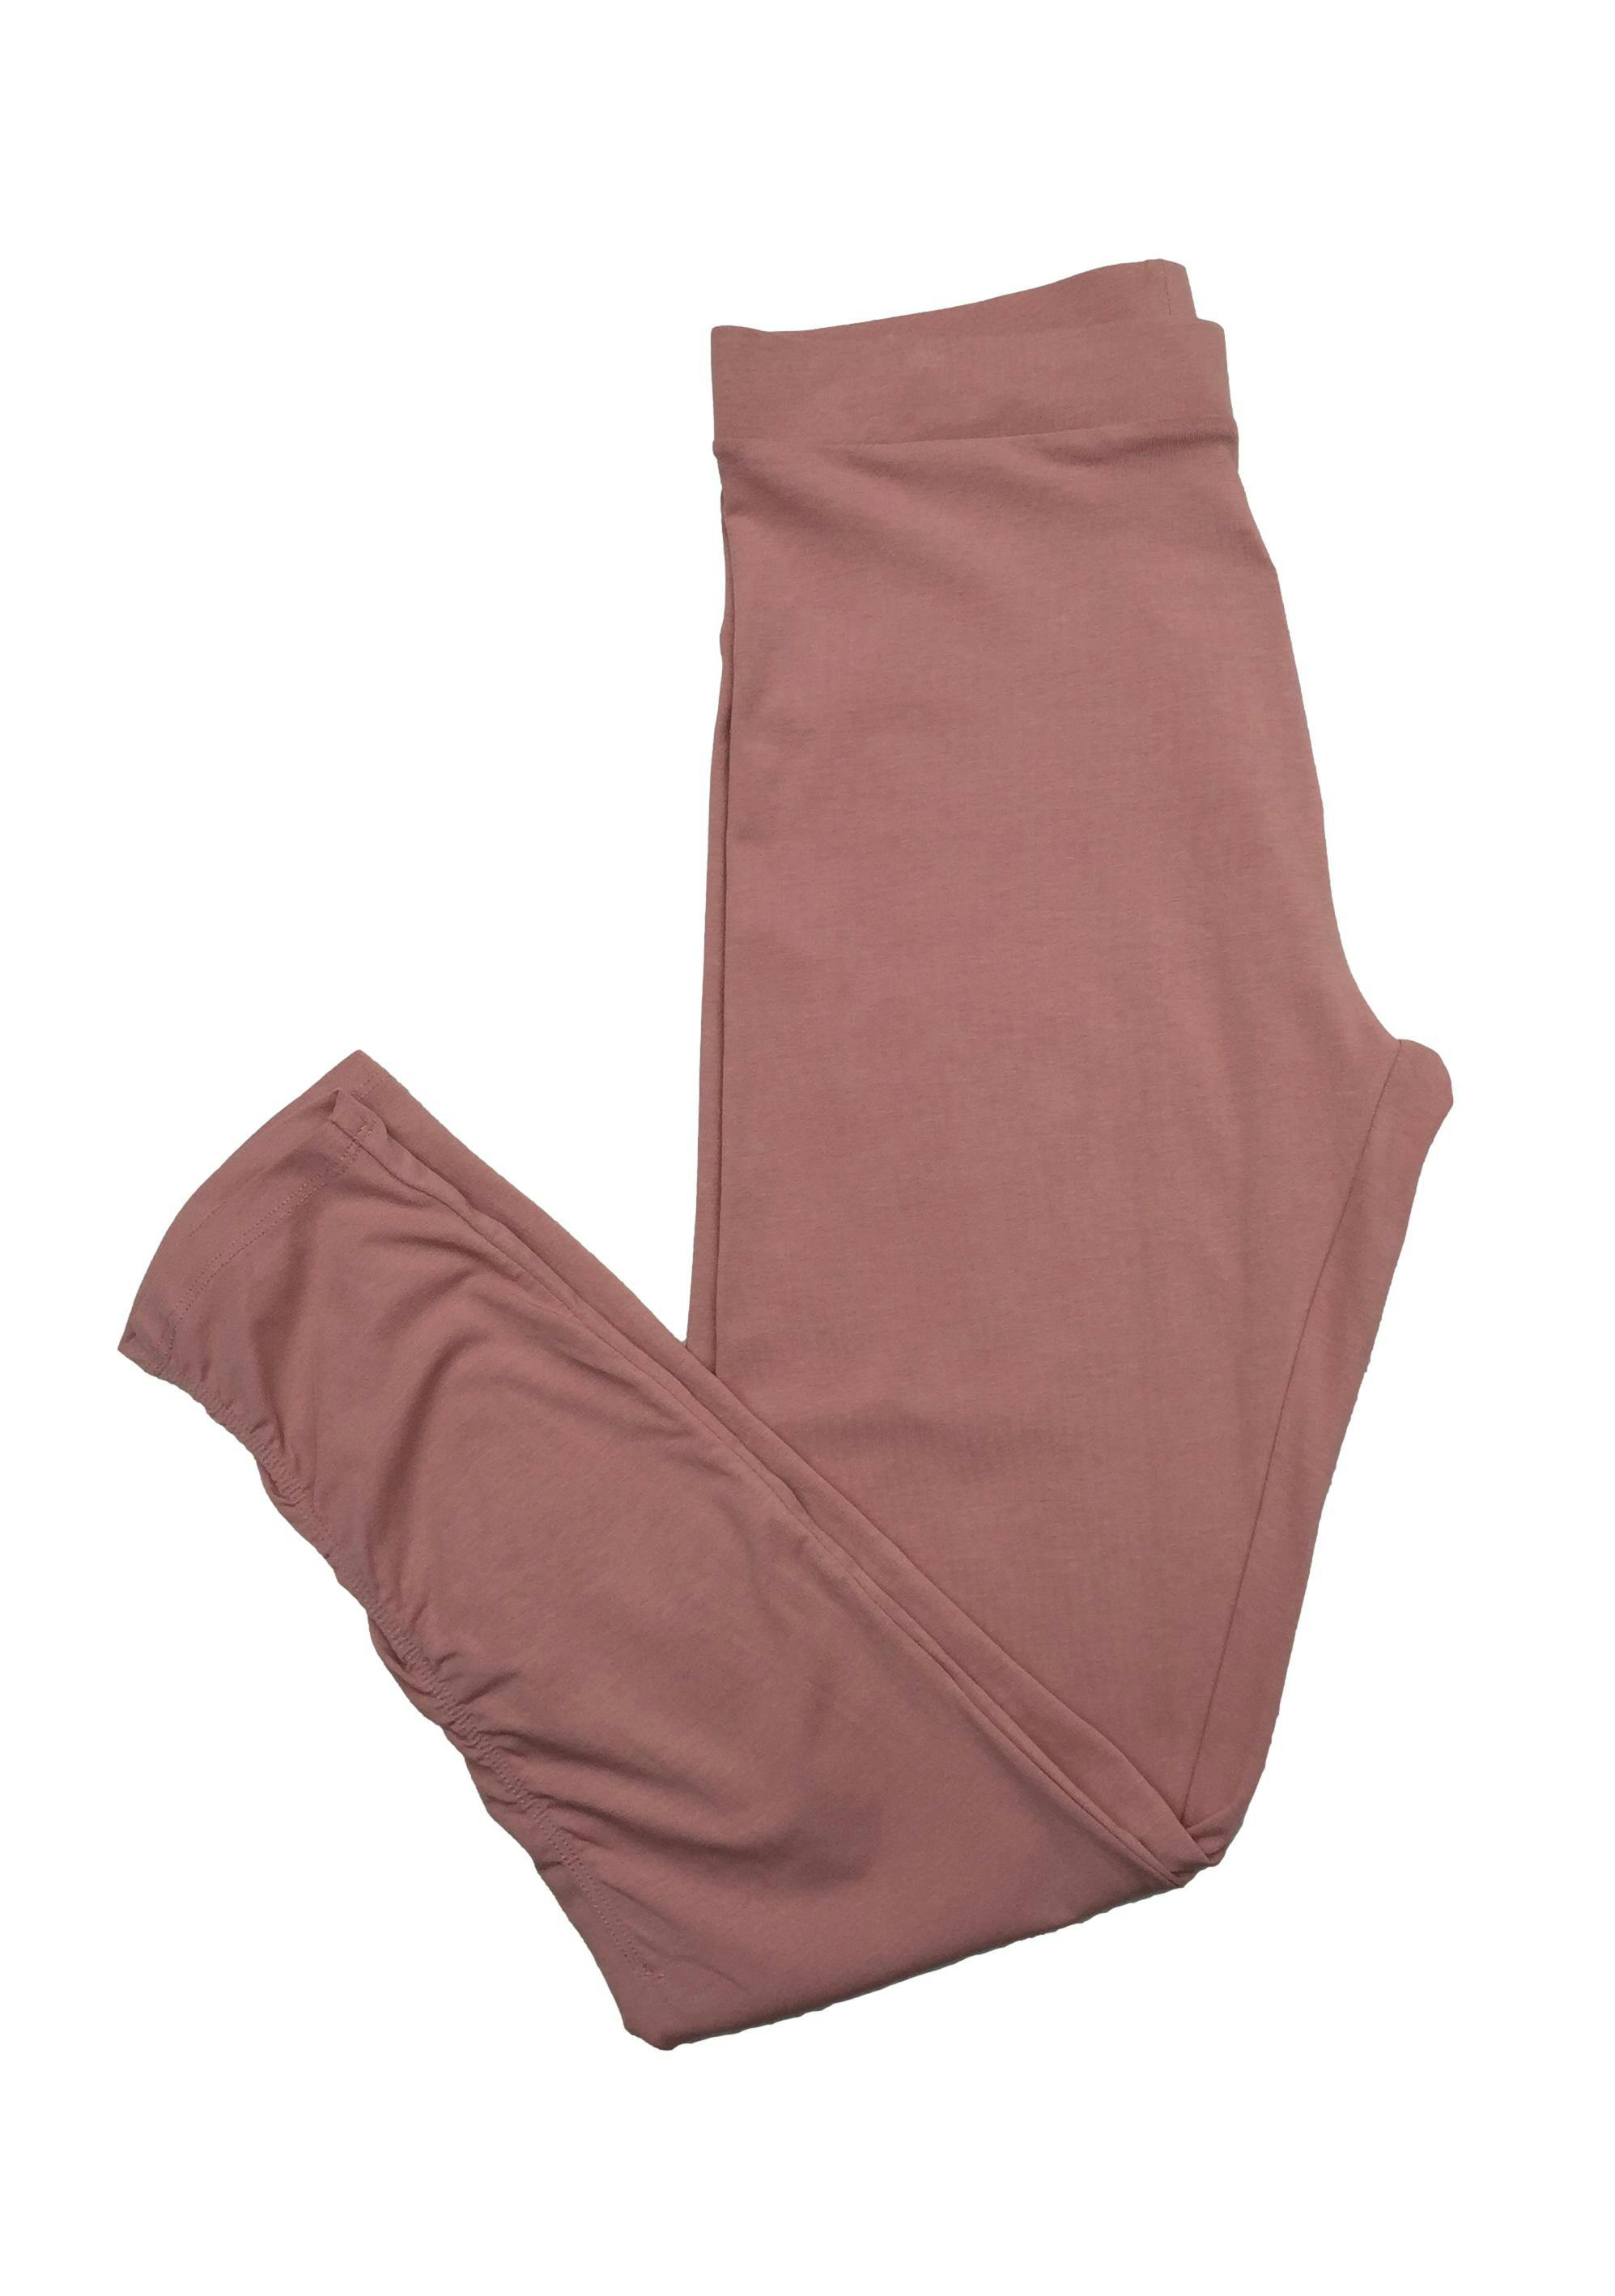 Leggings Mango palo rosa, pretina en la cintura, elástico en la patte inferior. Cintura: 74cm (sin estirar), Tiro: 28cm, Largo: 93cm. Nuevo con etiqueta.